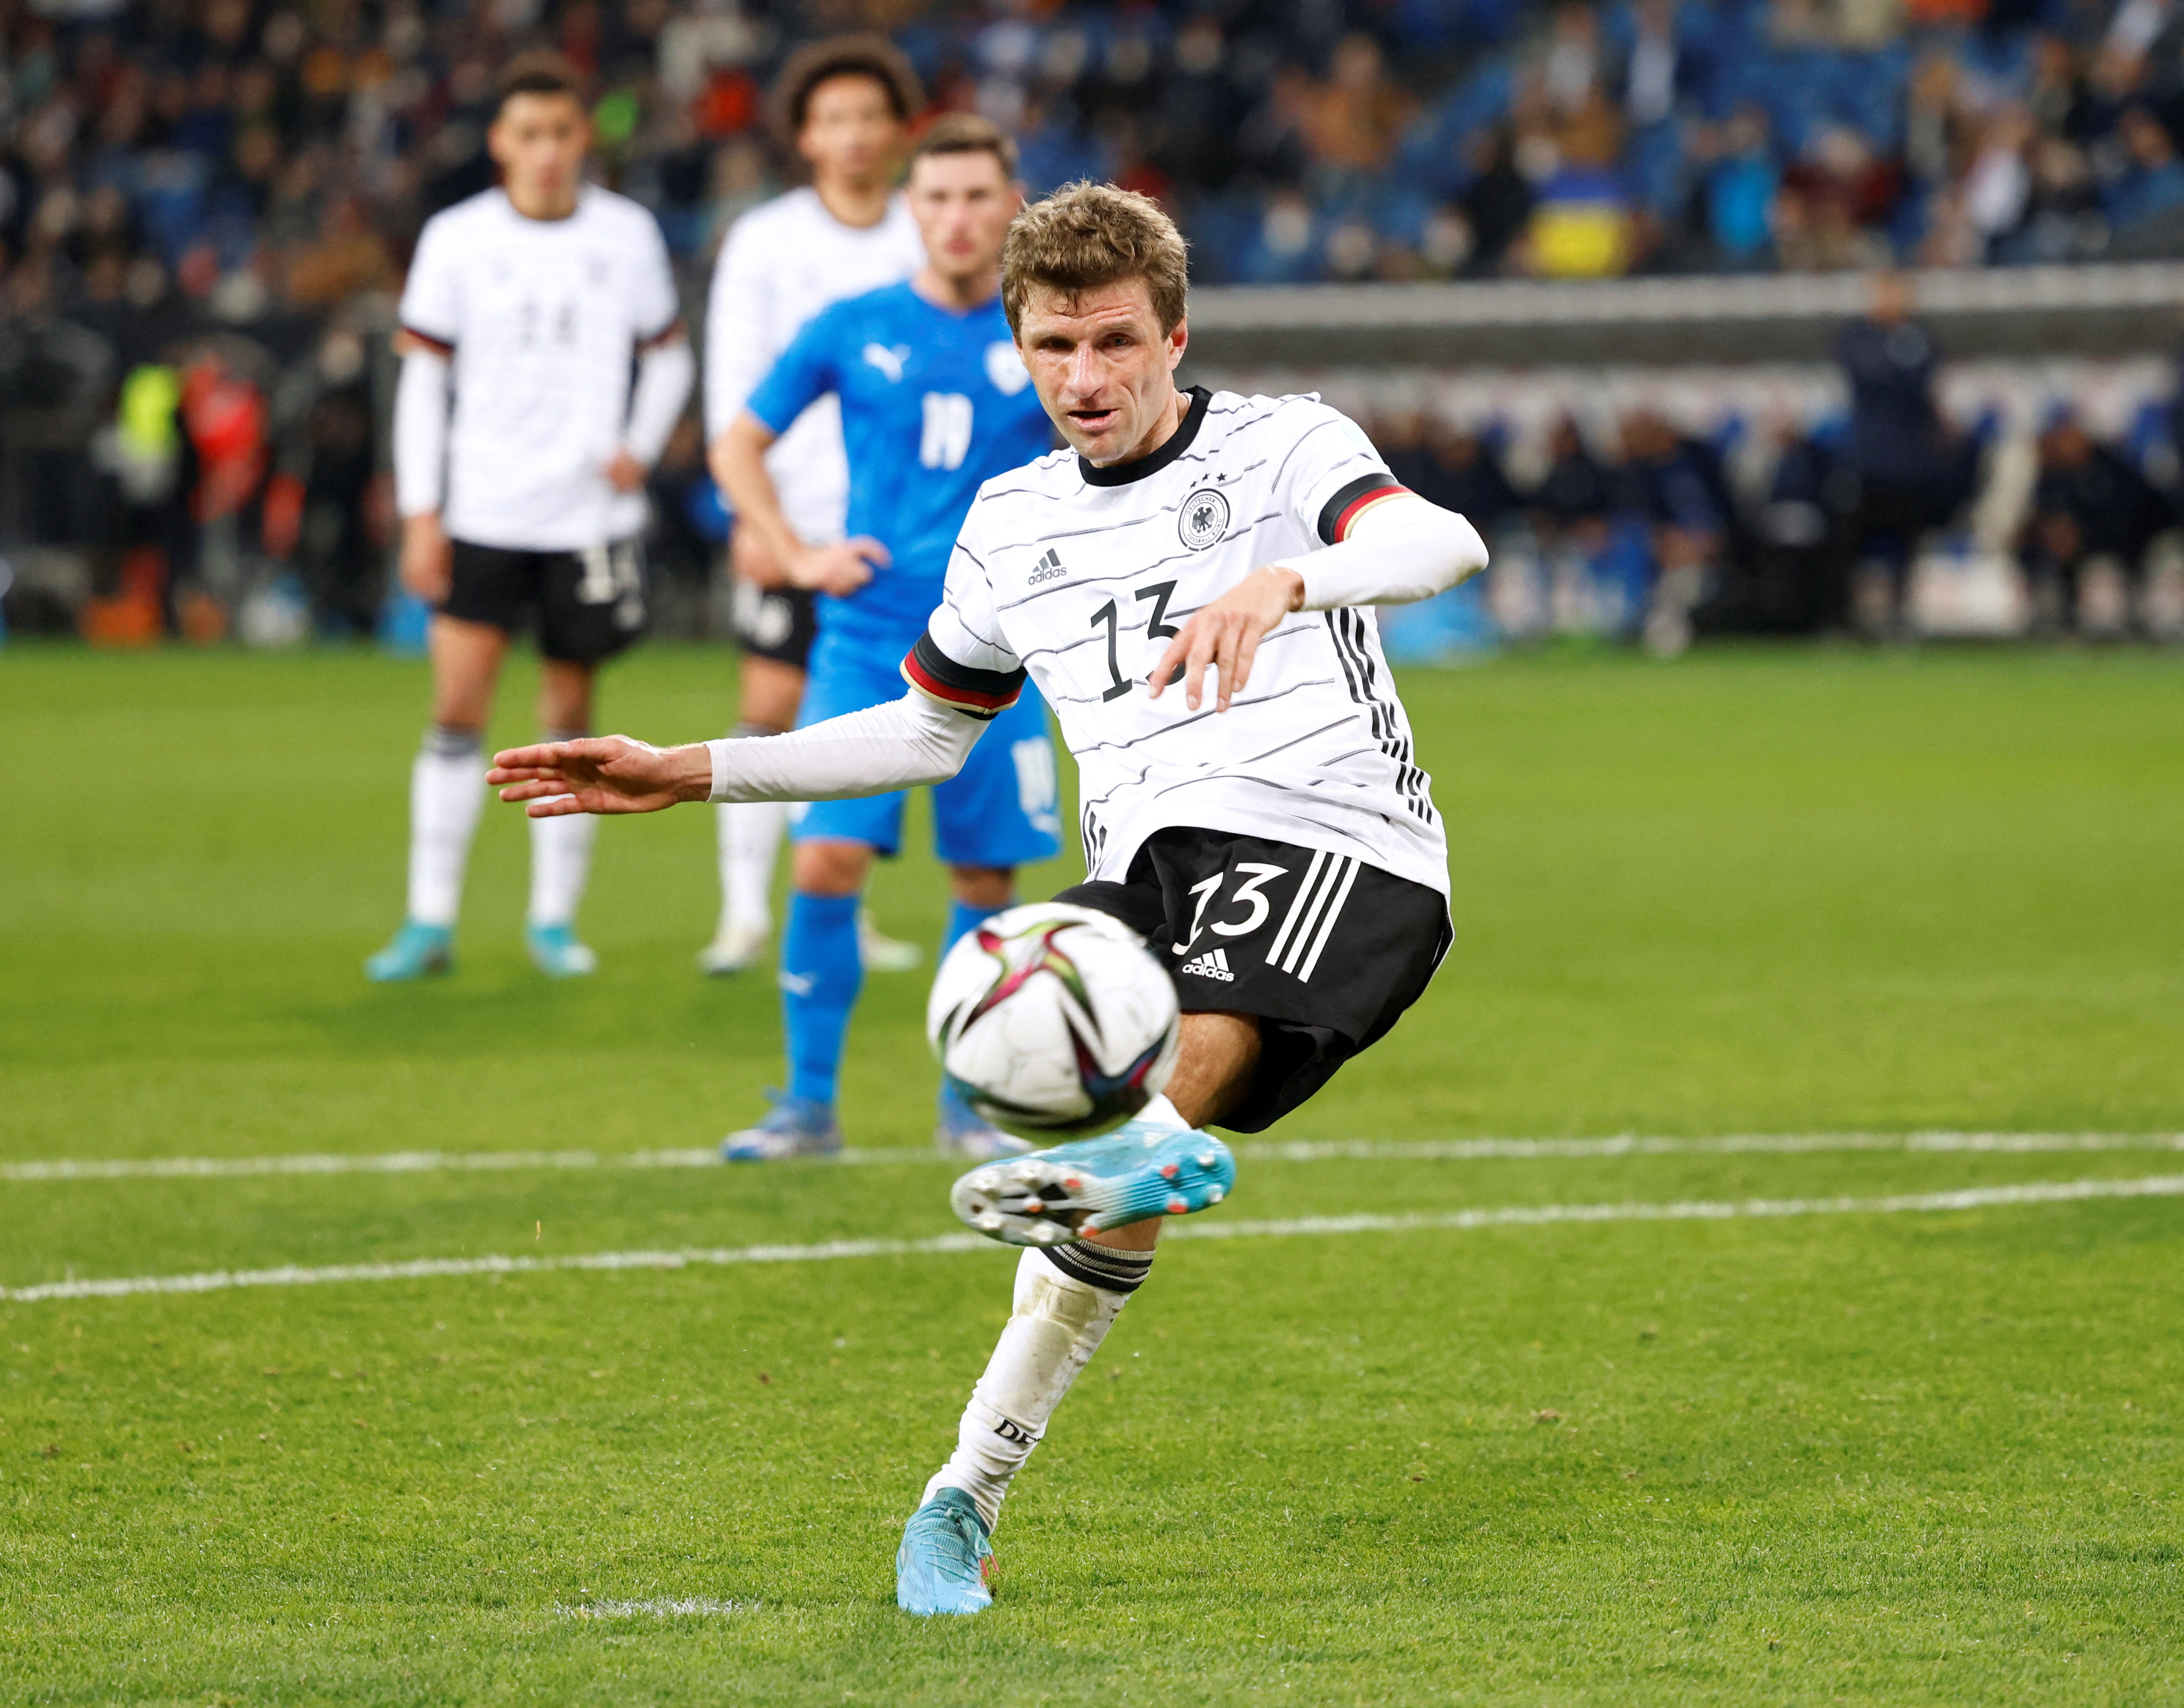           Dự đoán tỷ số tuyển Đức vs Nhật Bản, World Cup 2022 hôm nay         